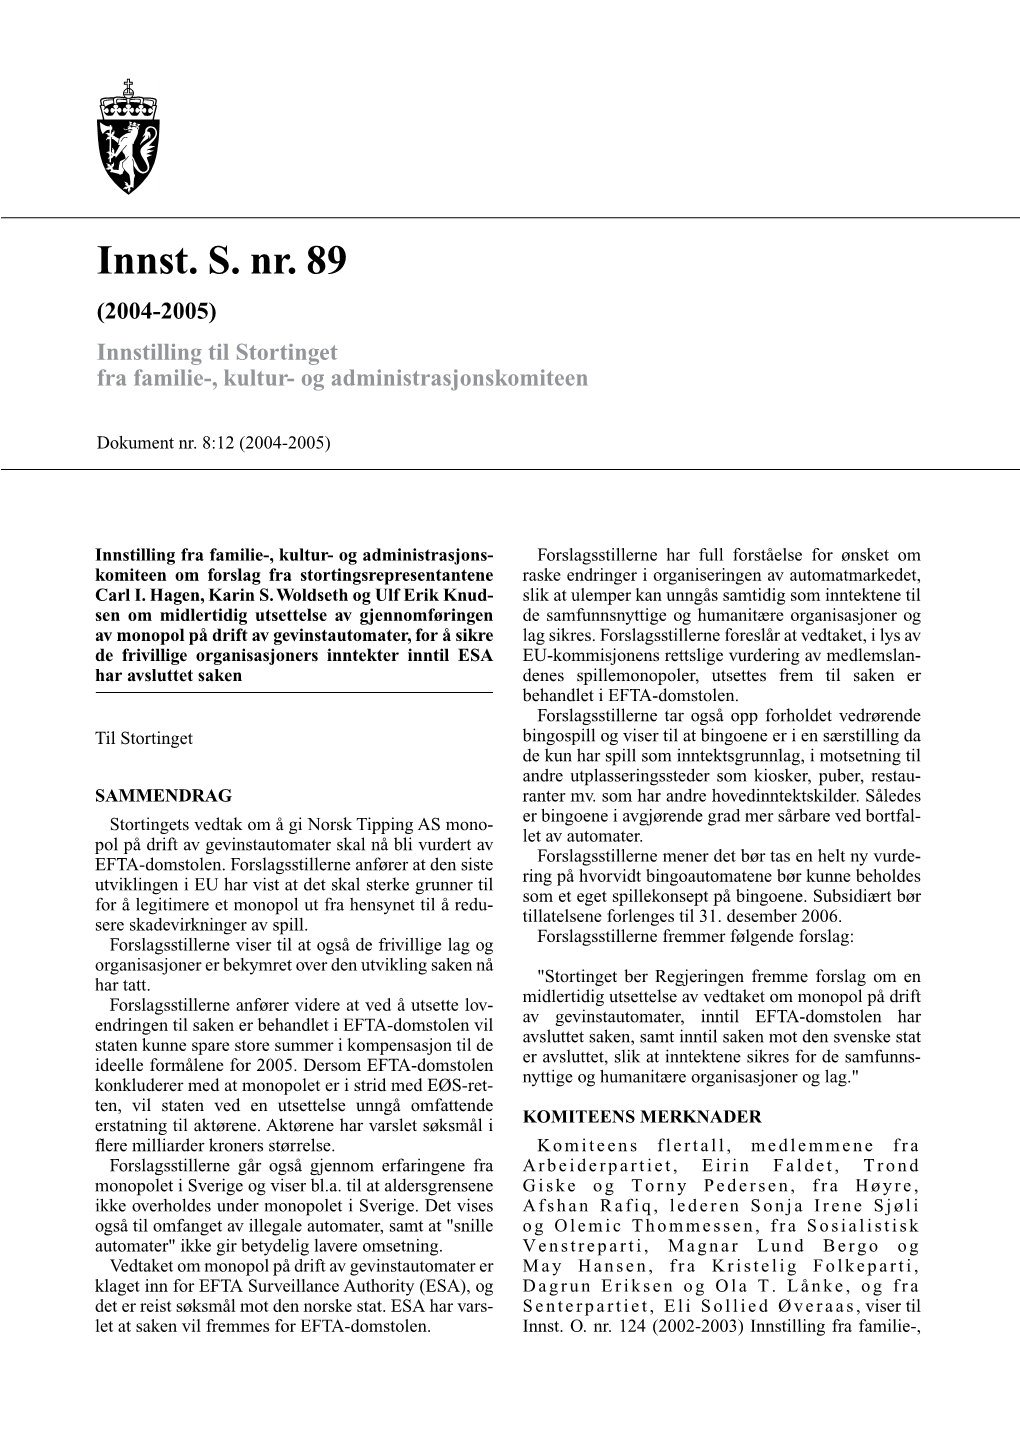 Innst. S. Nr. 89 (2004-2005) Innstilling Til Stortinget Fra Familie-, Kultur- Og Administrasjonskomiteen